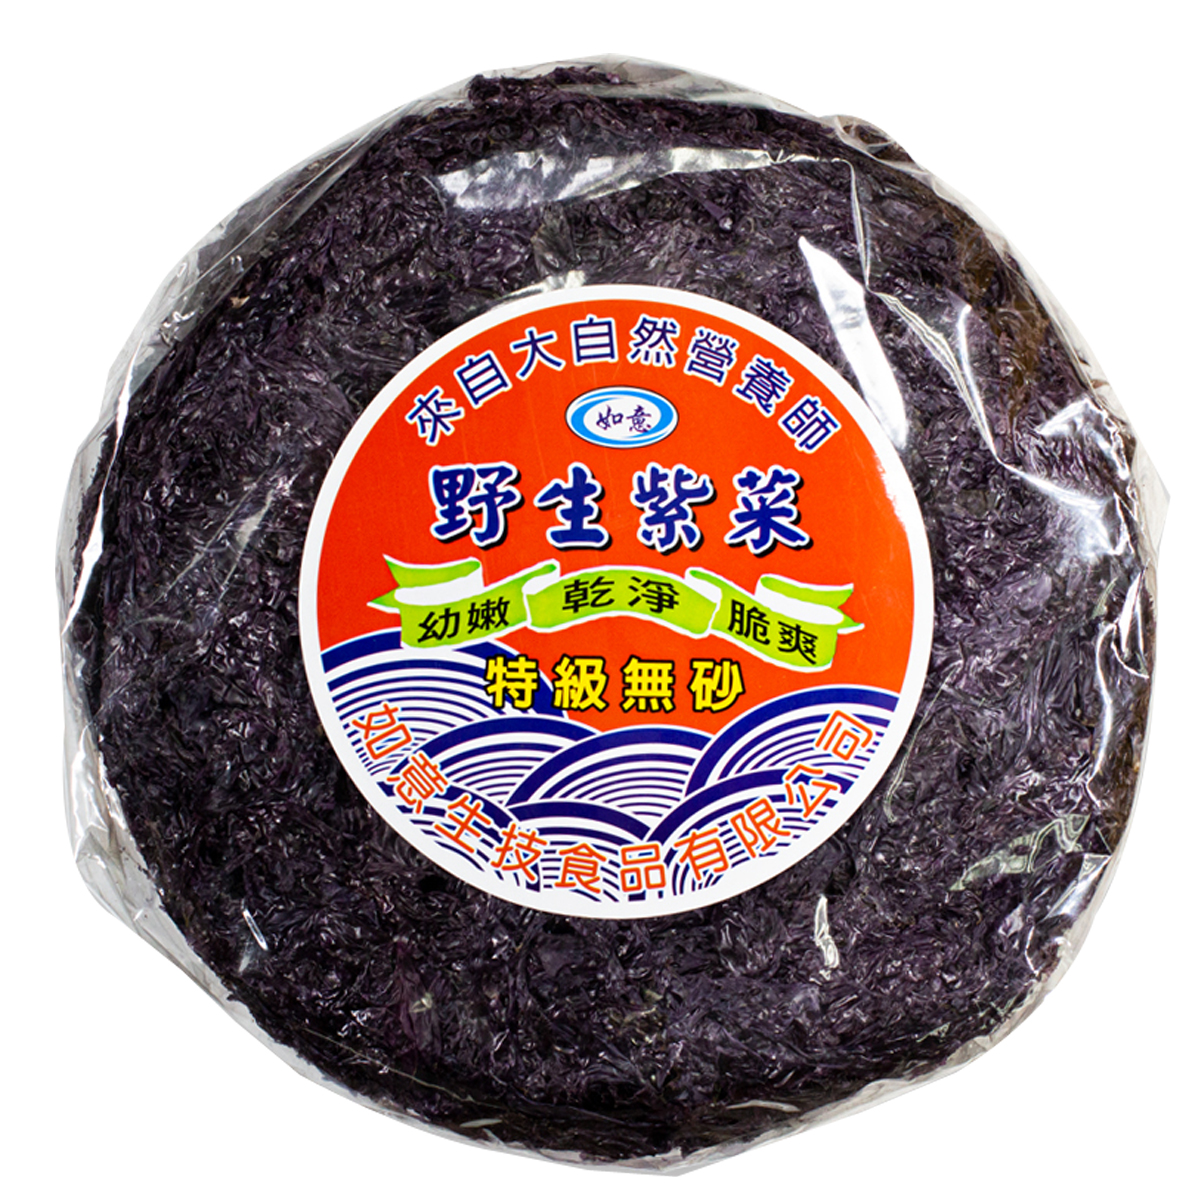 Image Dried Seaweed 如意-无砂紫菜 80grams